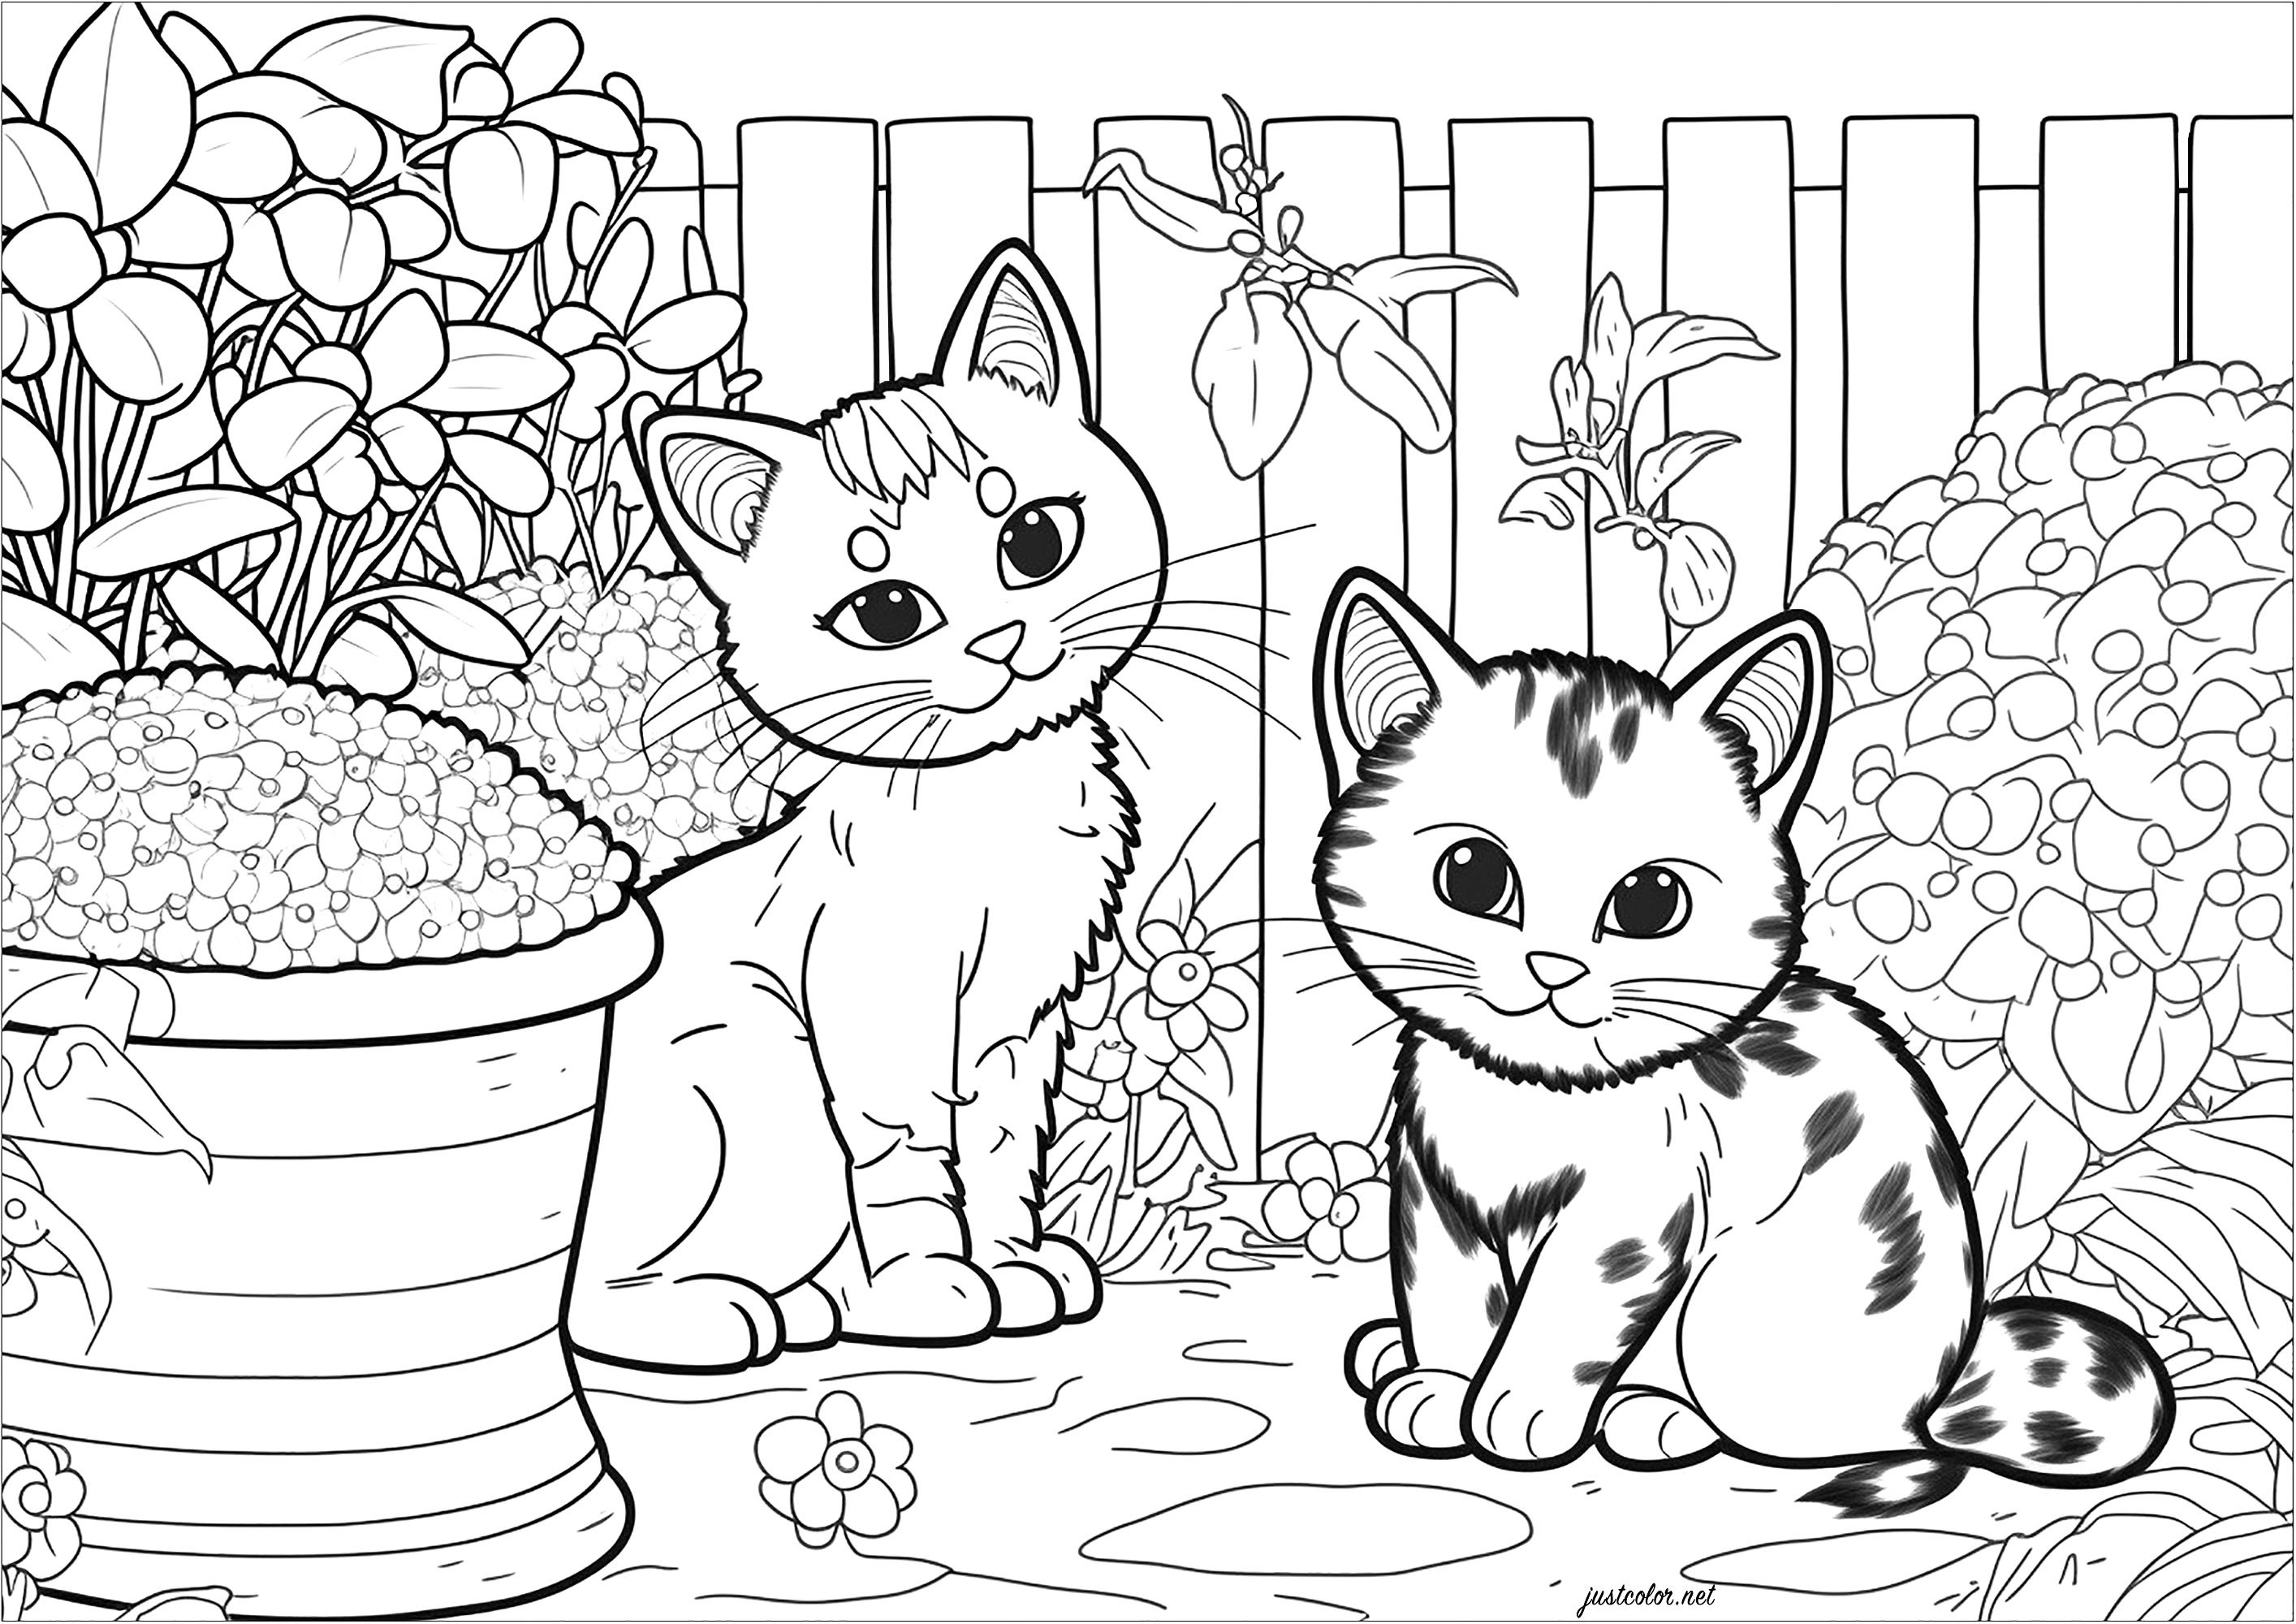 Zwei kleine Katzen im Garten zum Ausmalen. Diese Malvorlage ist sowohl niedlich als auch entspannend. Es zeigt zwei kleine Katzen, die in einem Garten spielen. Die Katzen sind von einer Vielzahl von Pflanzenelementen umgeben, wie Blumen, Büsche, Bäume und Gräser. Es ist eine tolle Möglichkeit, in eine Welt voller Farben und Natur zu entkommen.